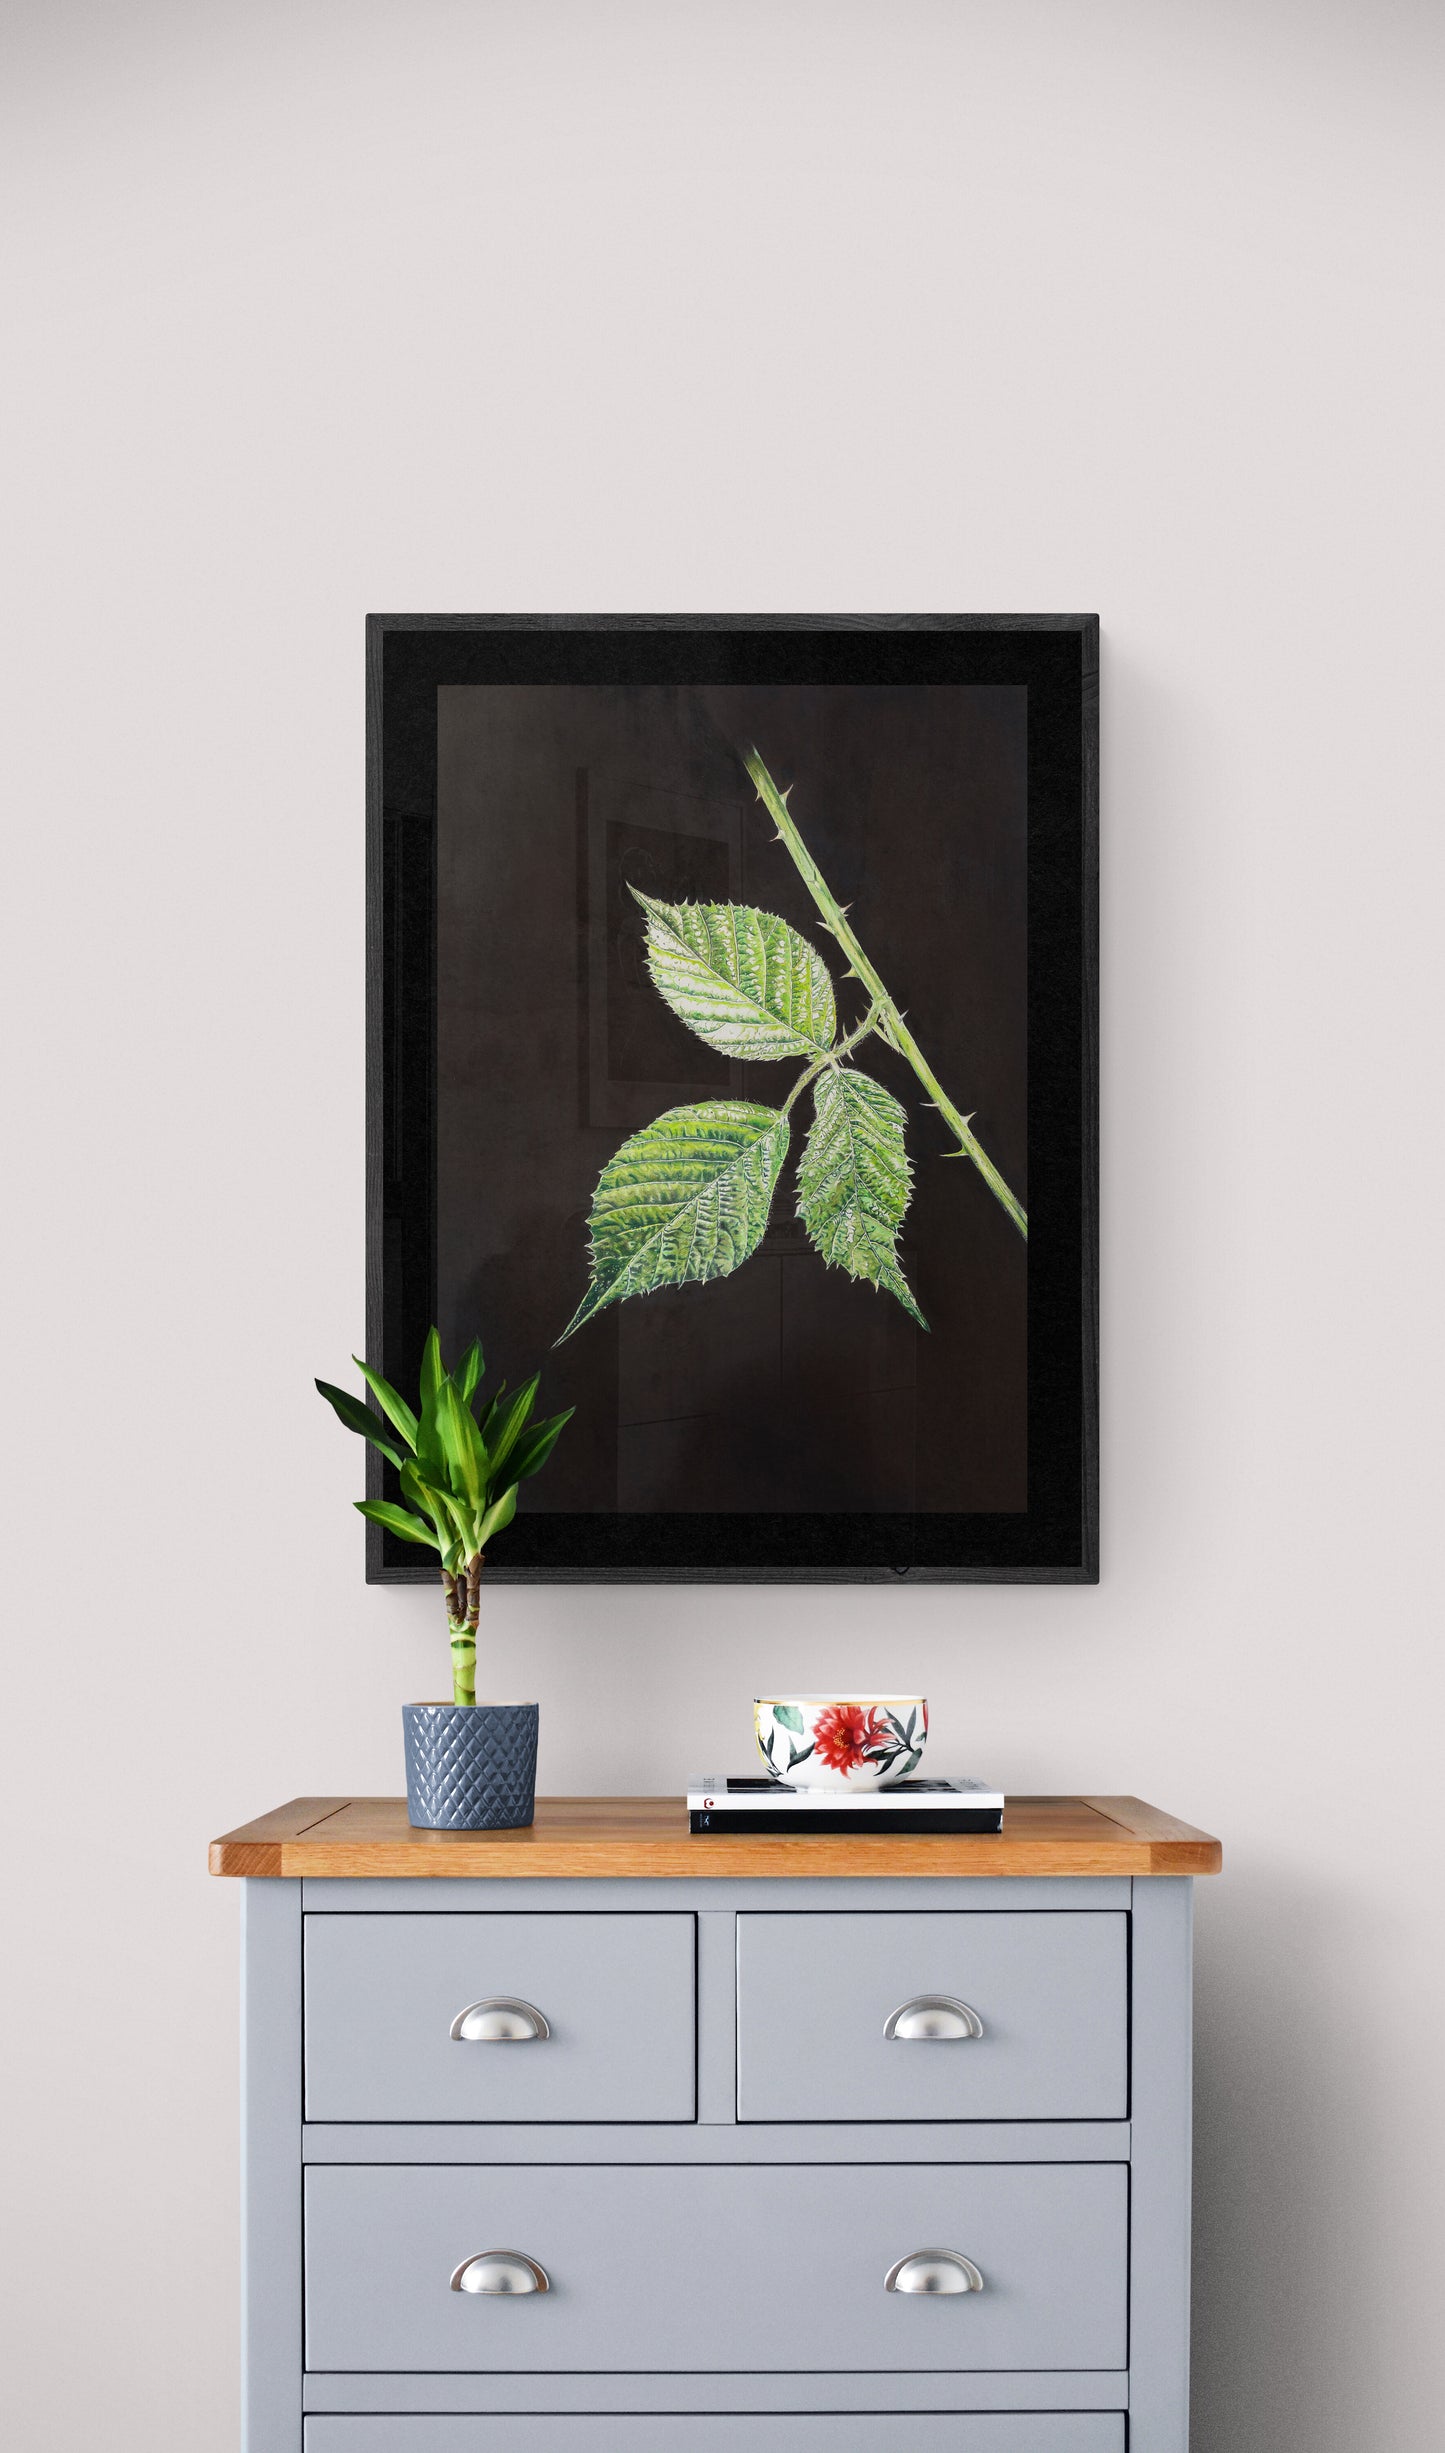 Blackberry Leaves - Original Artwork - Framed